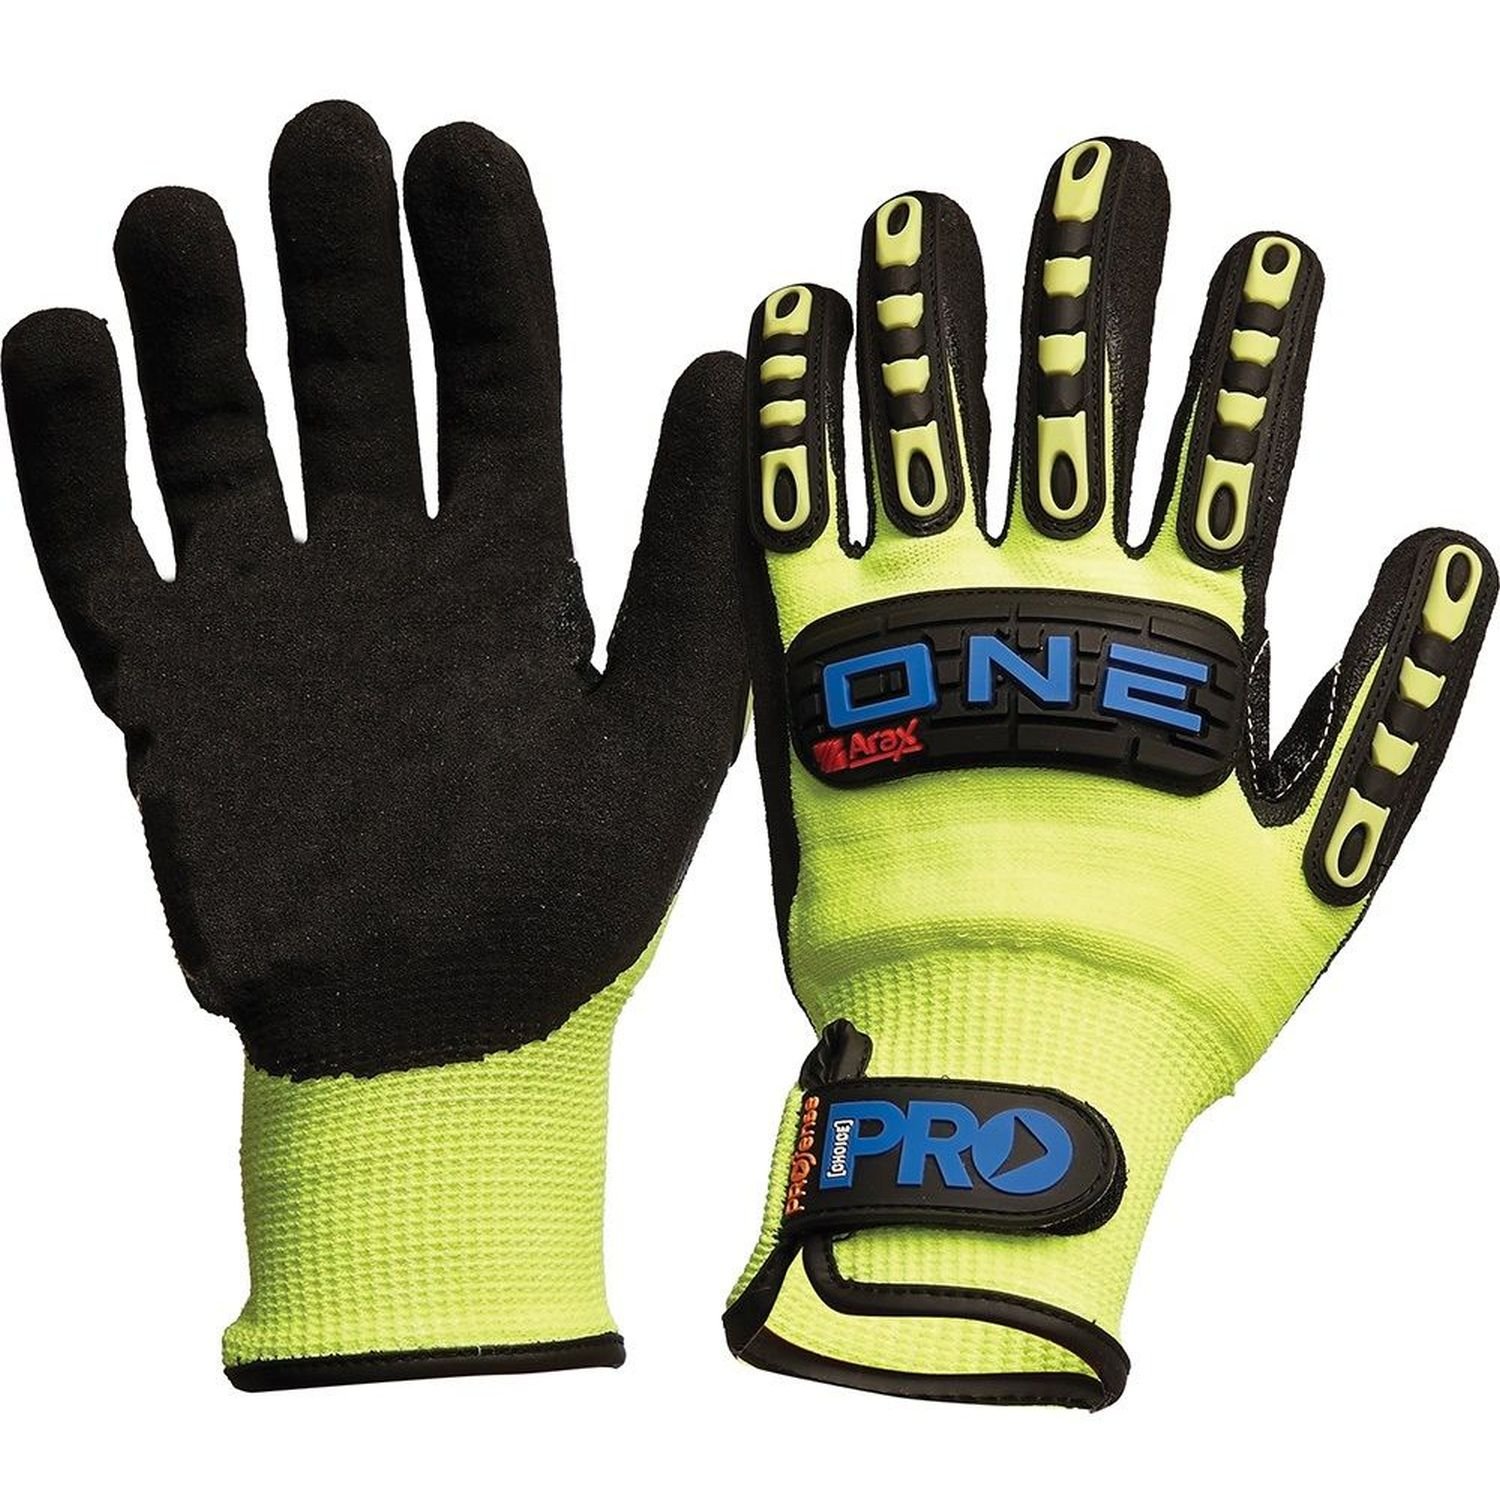 Arax Gold Anti Vibration Cut 5 Glove